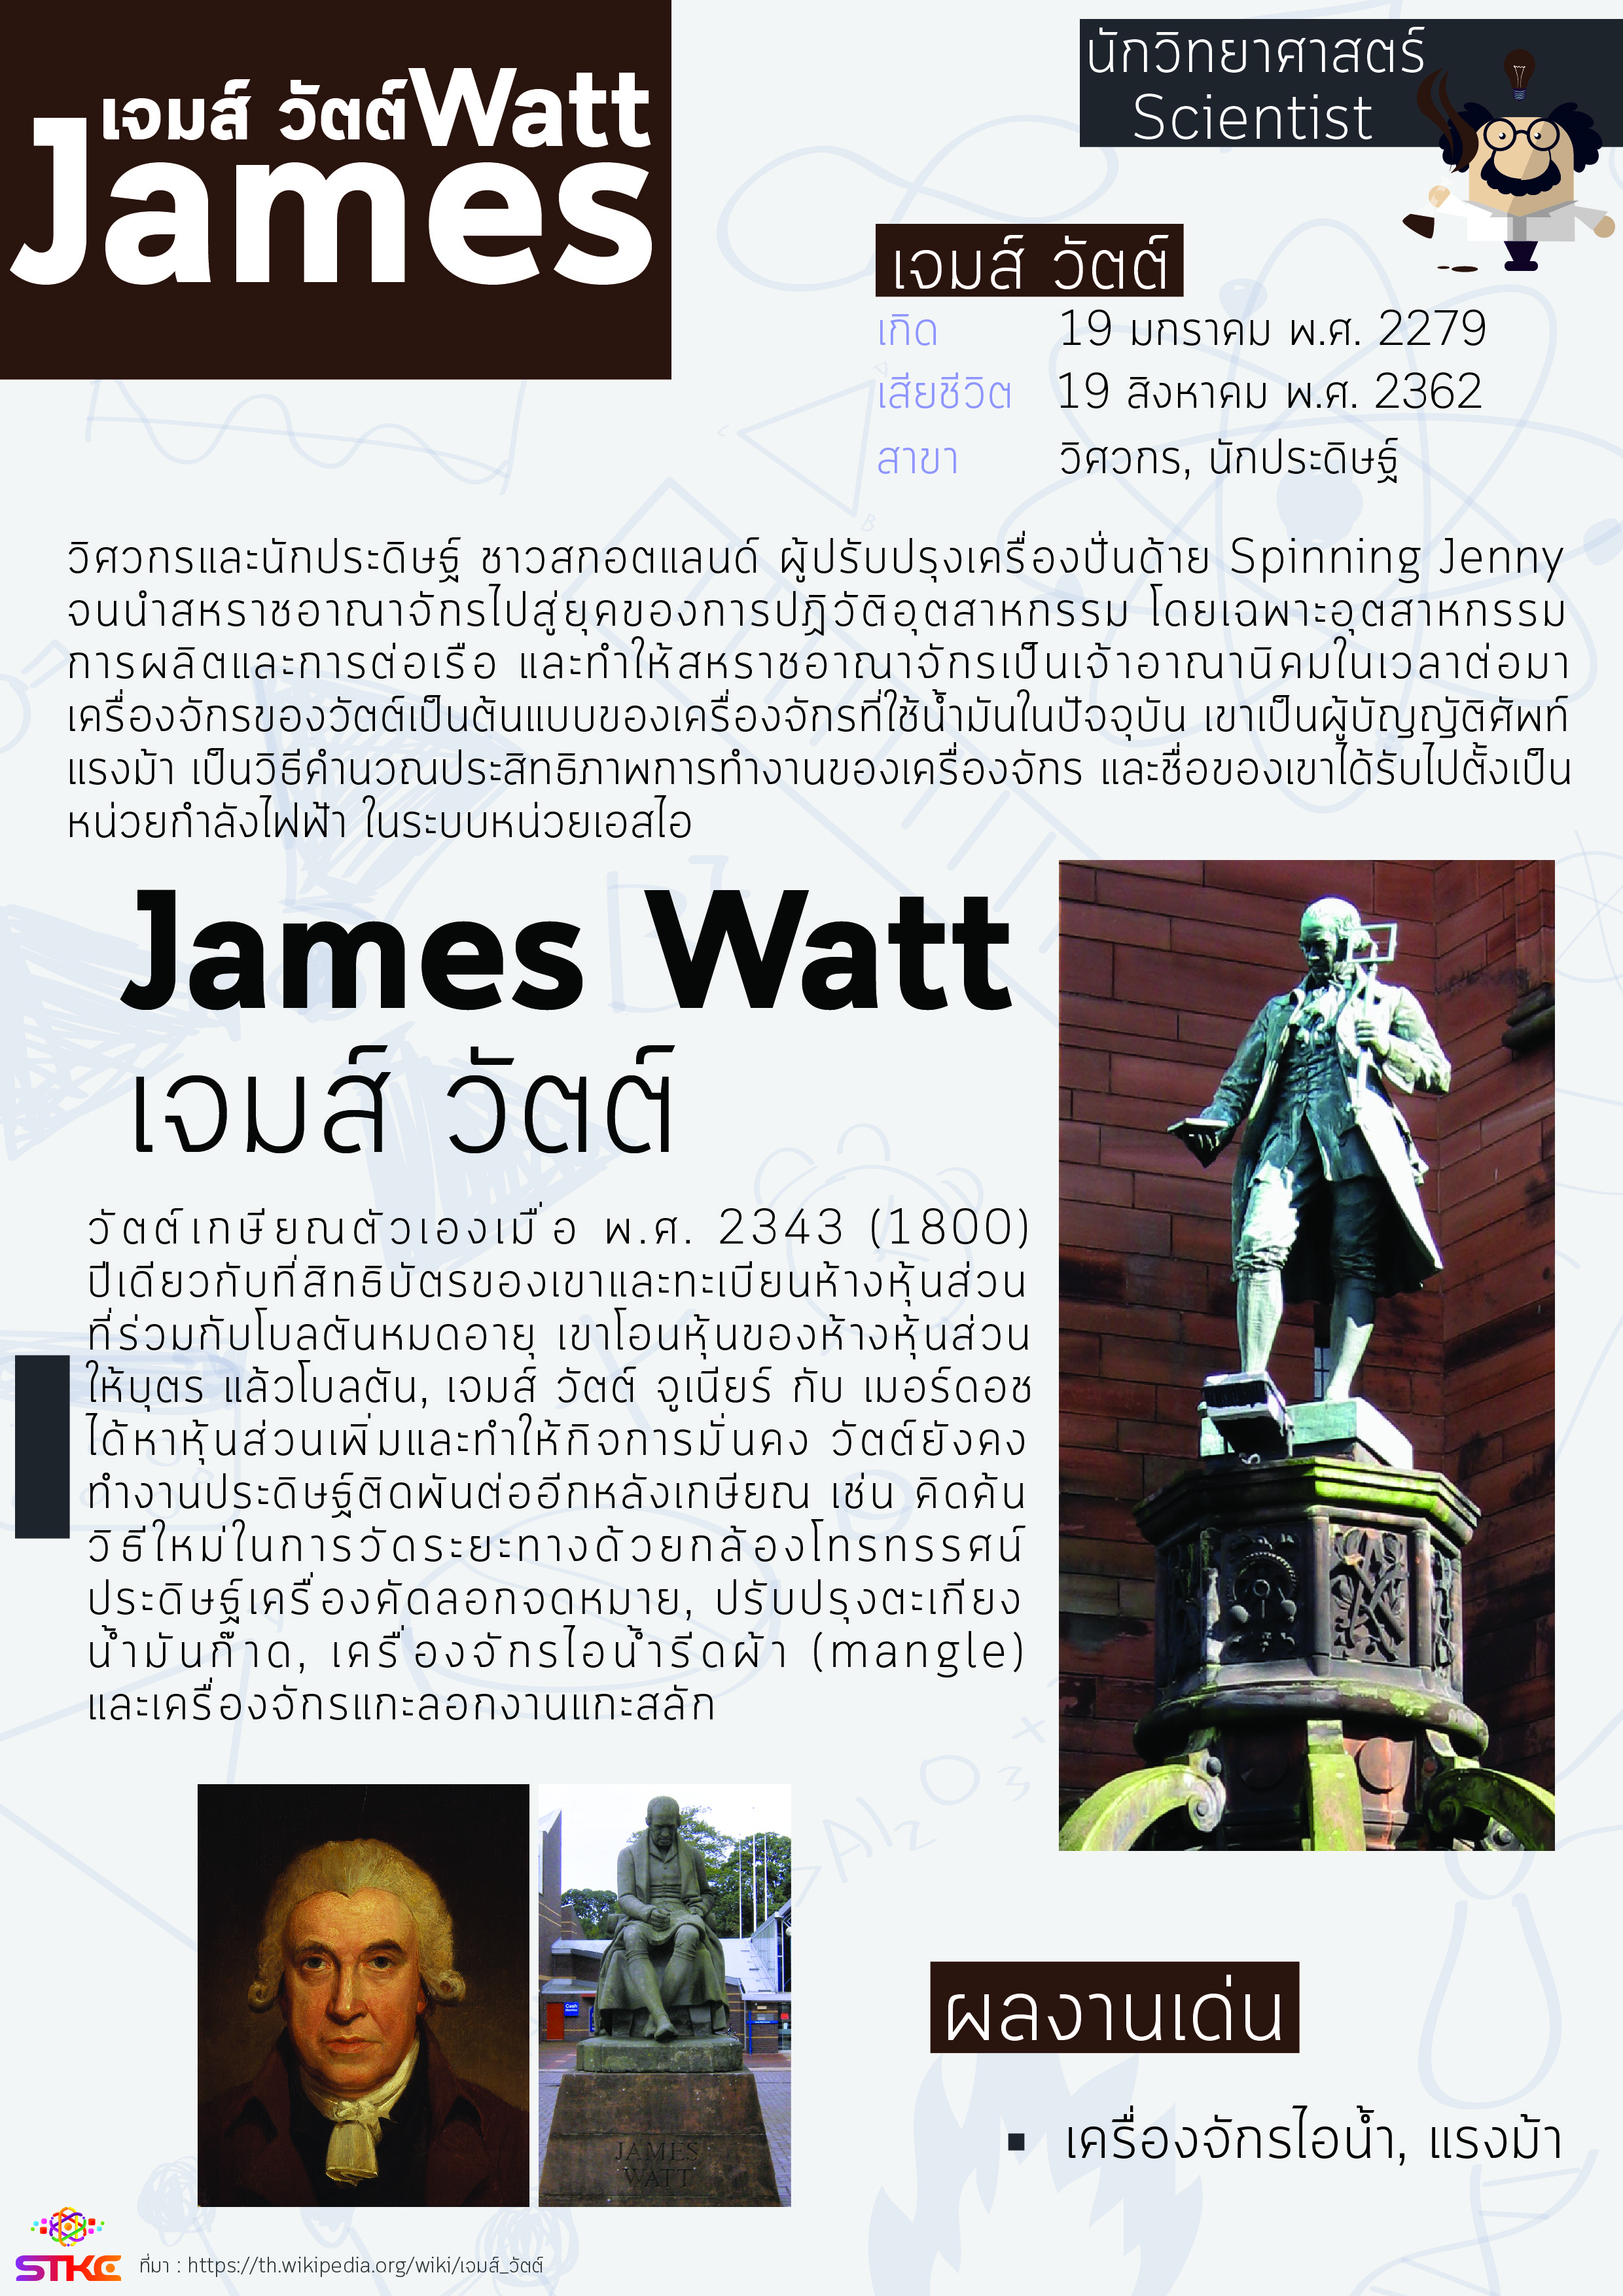 นักวิทยาศาสตร์ เจมส์ วัตต์ (James Watt)